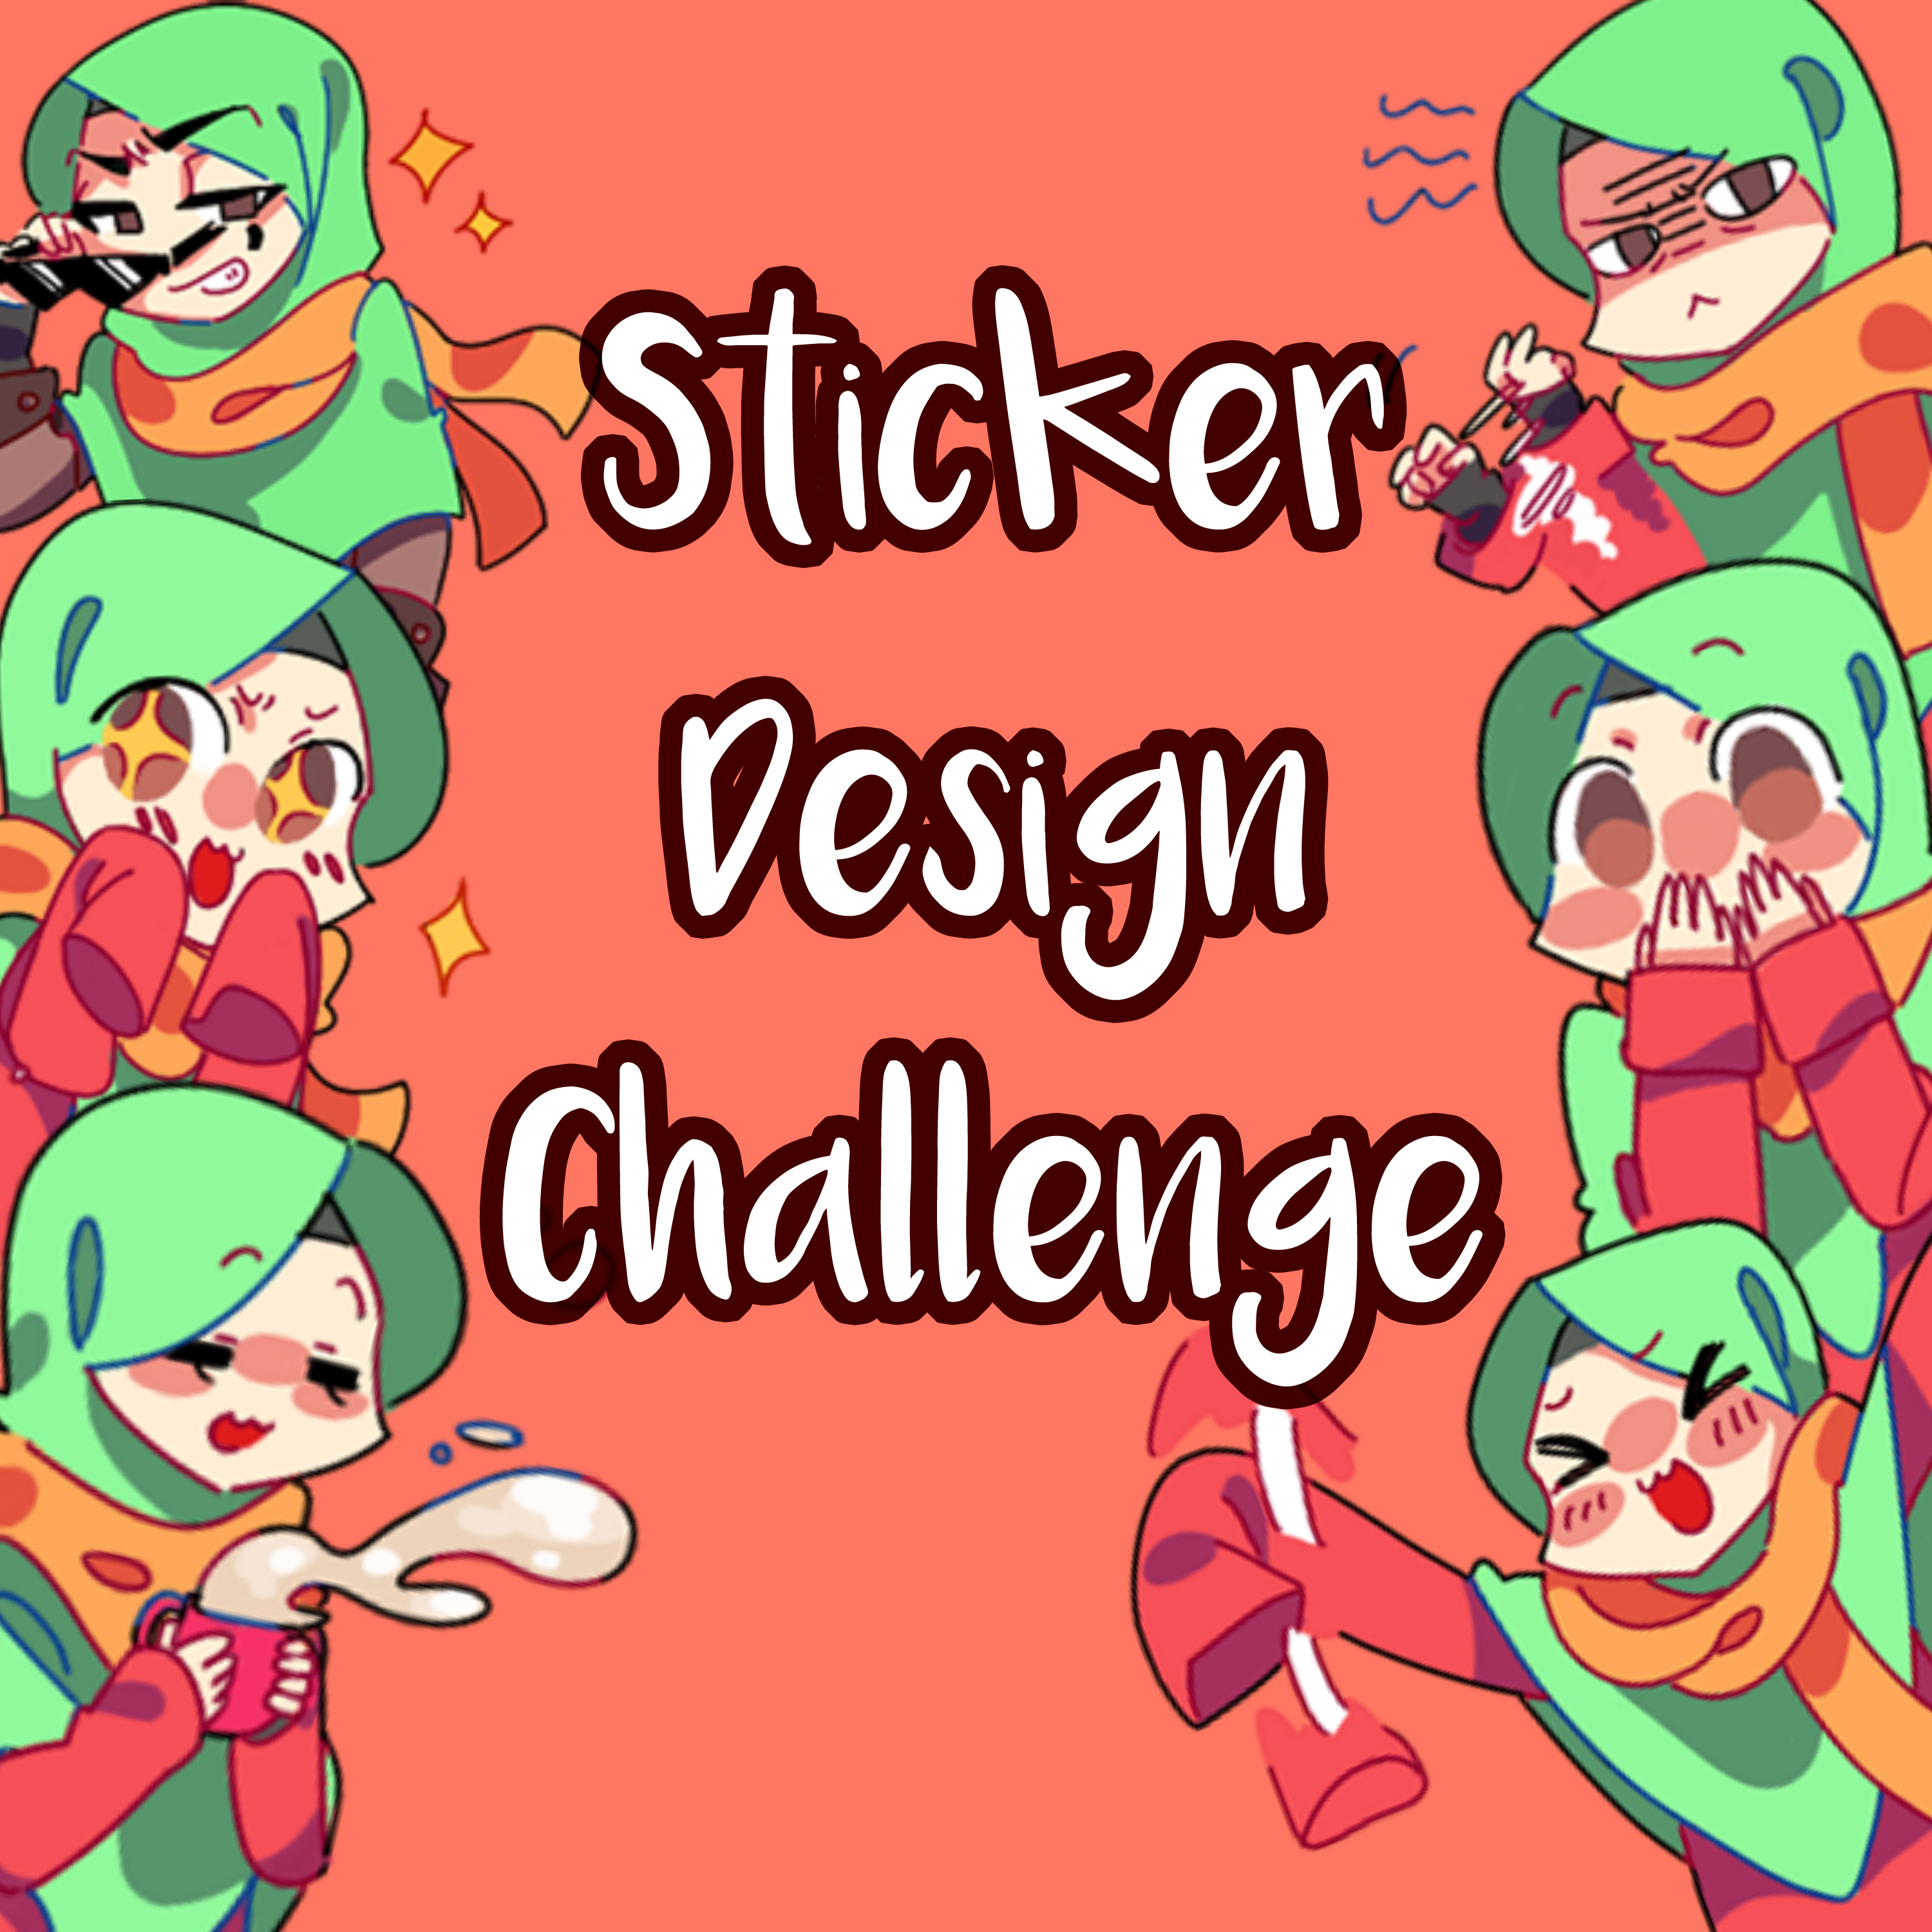  Sticker  Design Challenge Muslim  Manga  muslimmanga org